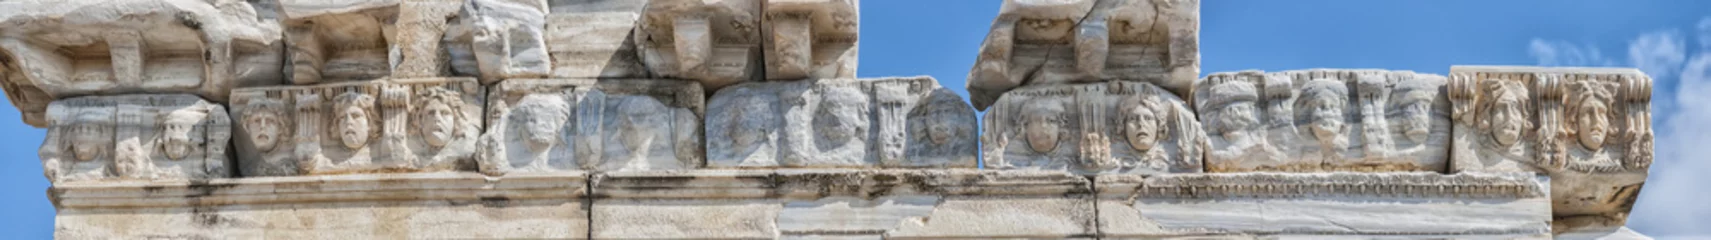 Fotobehang Side Temple of Apollo Facade Detail © Antony McAulay